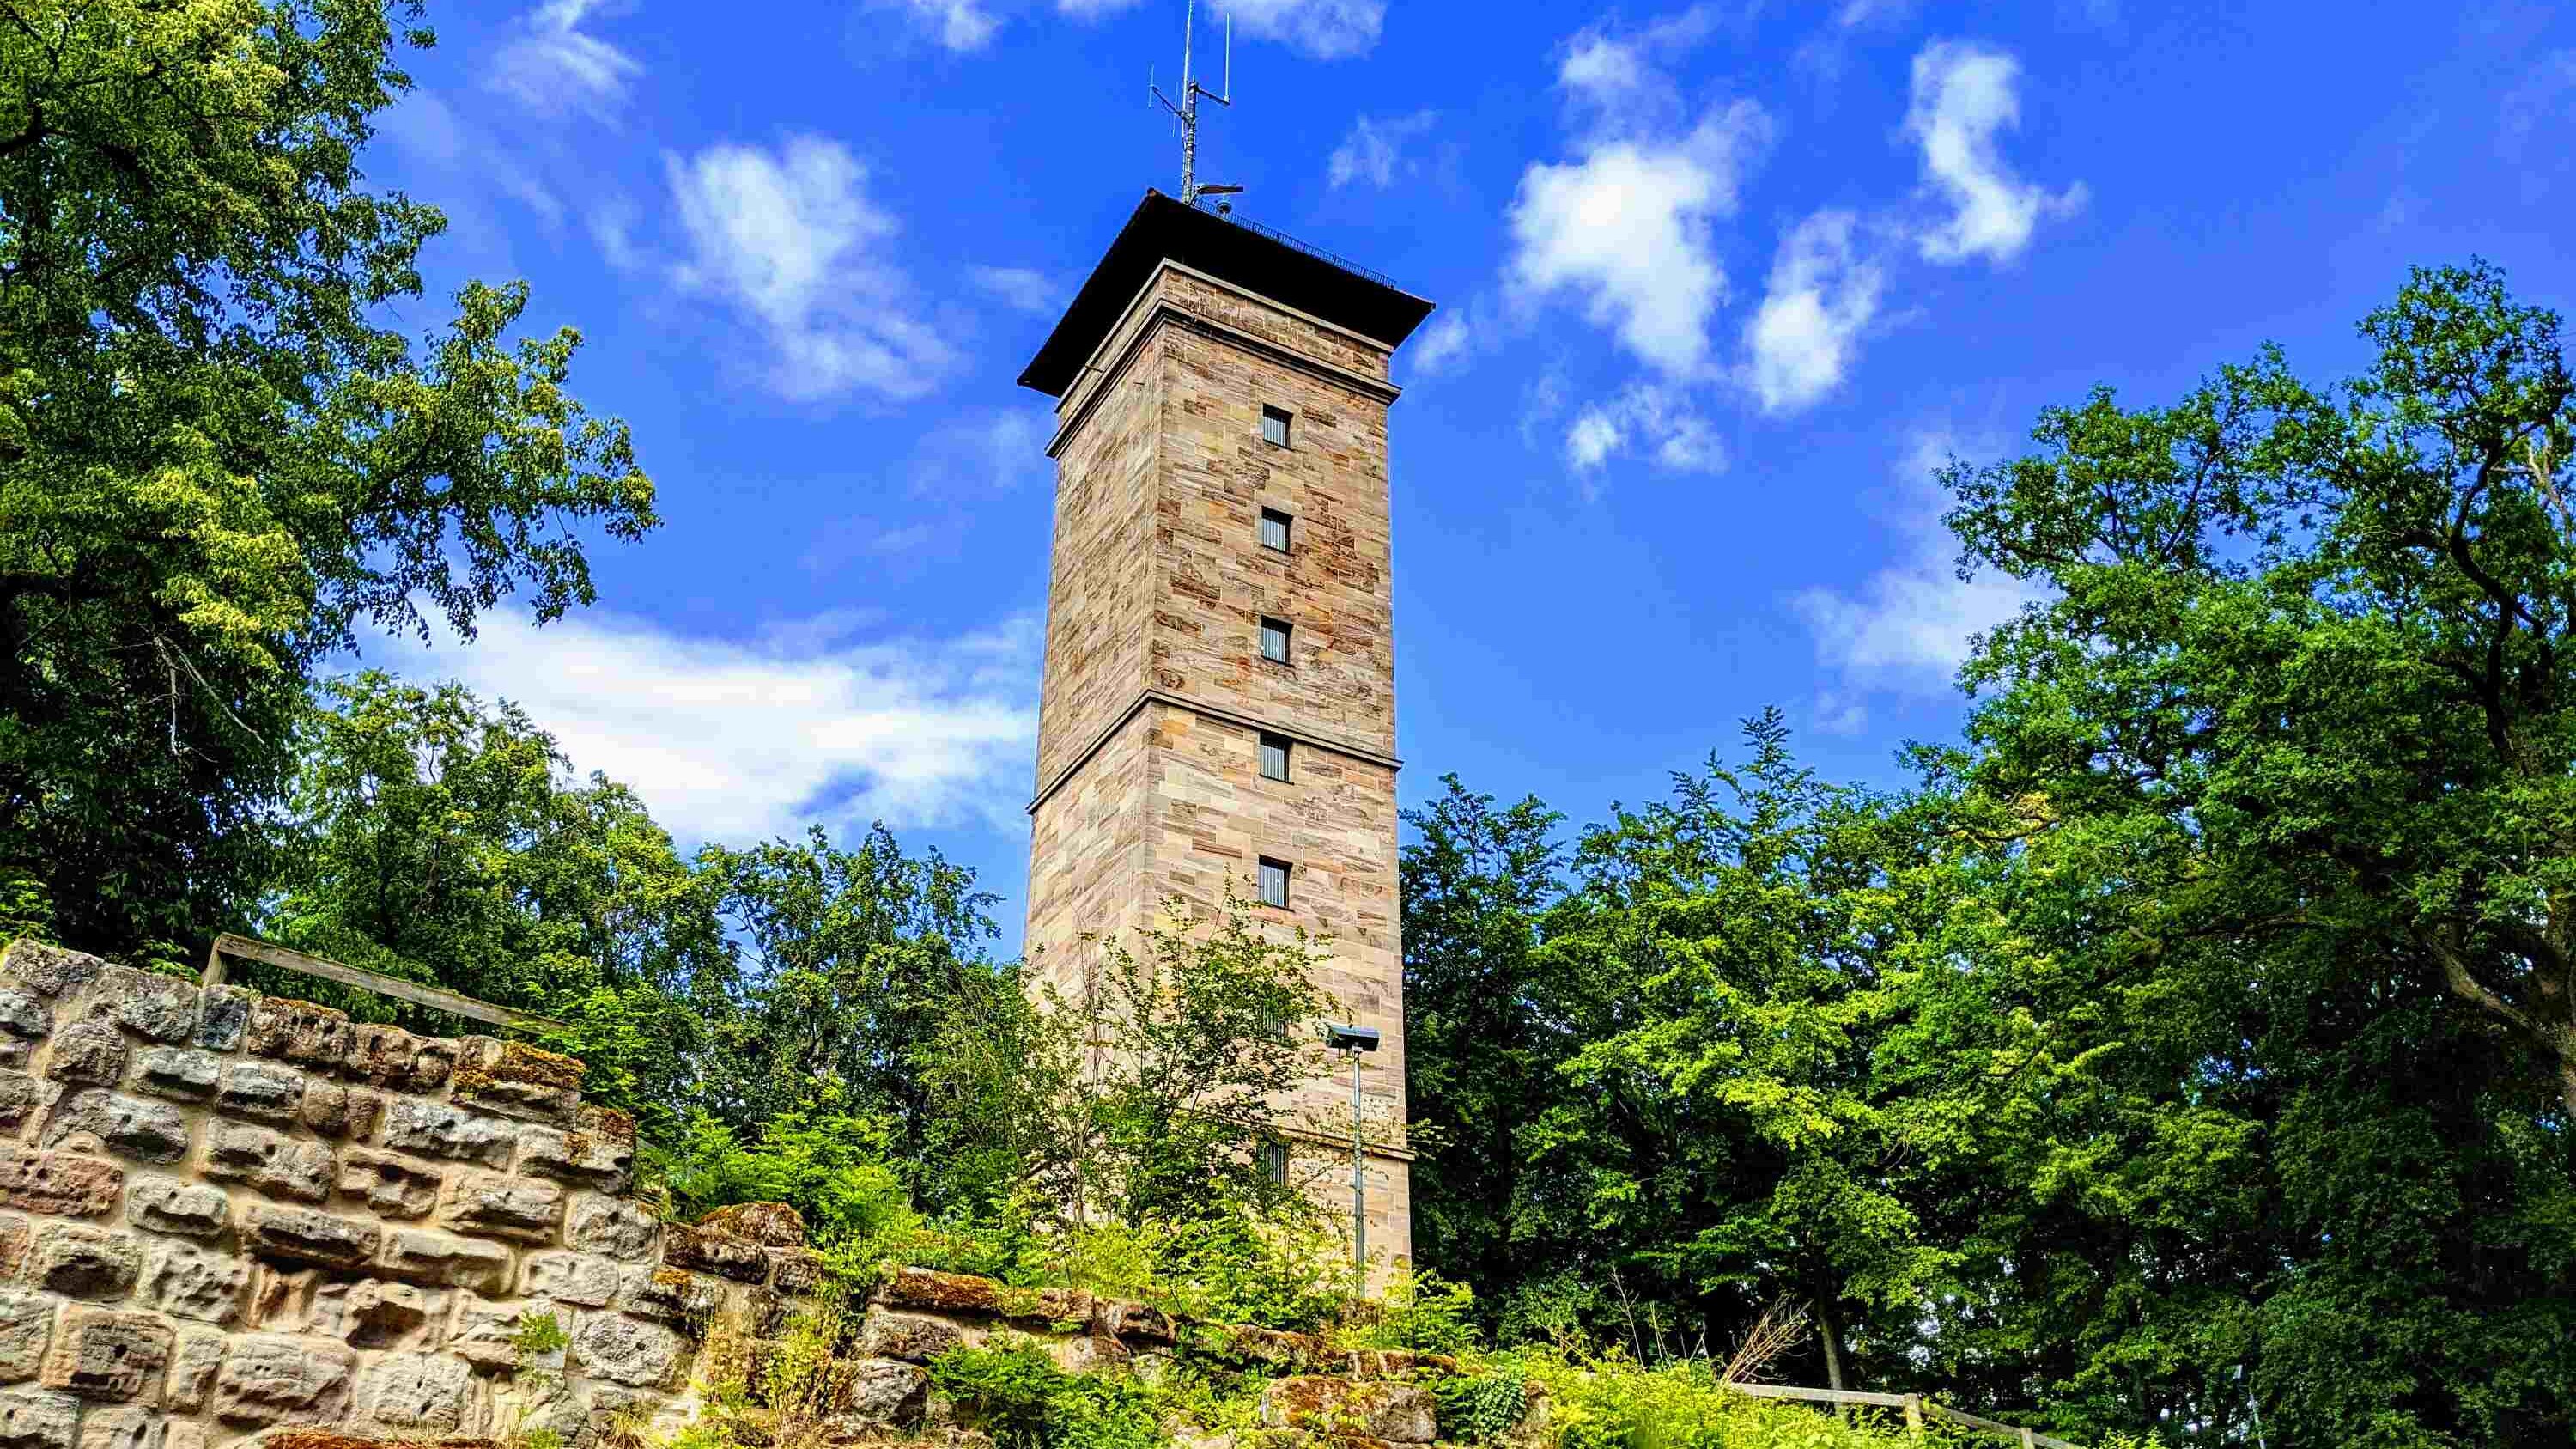 Turm der Alten Veste oberhalb der Mauer